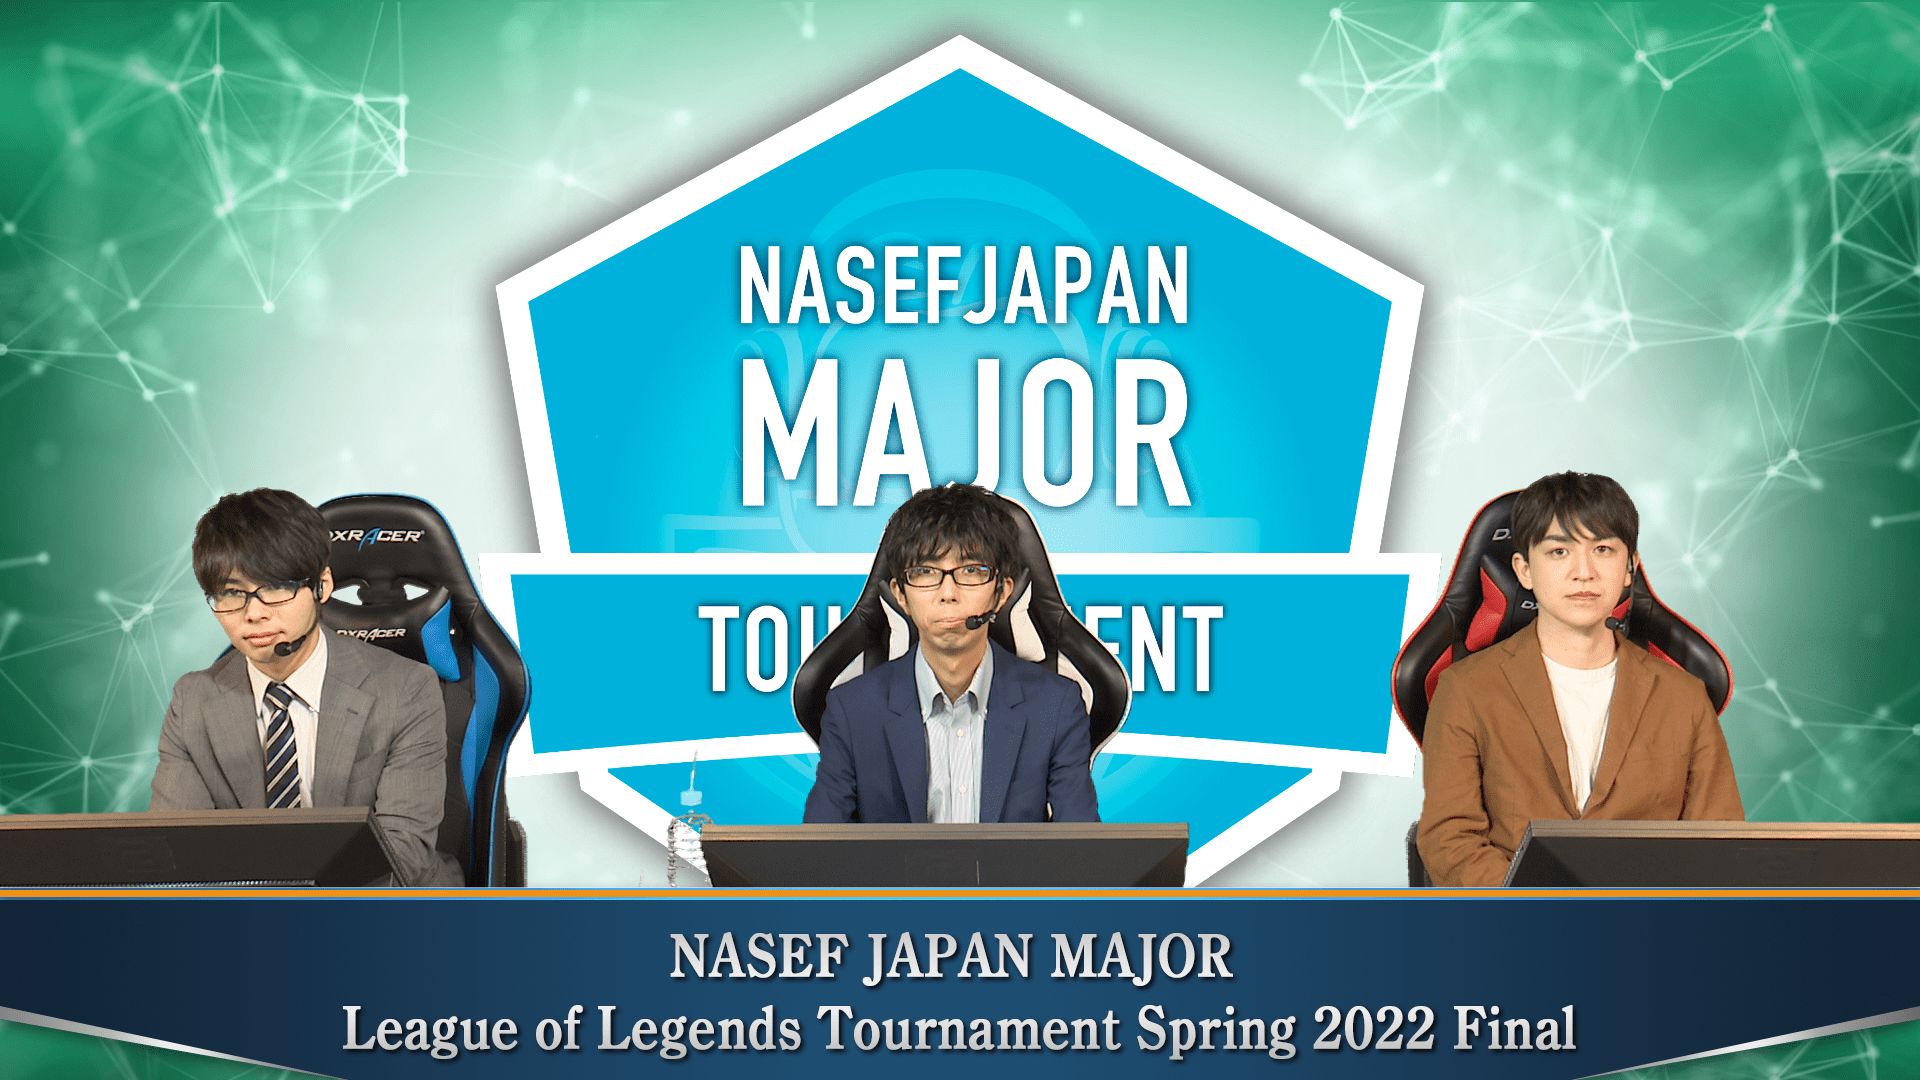 NASEF JAPAN MAJOR League of Legends Tournament Spring 2022